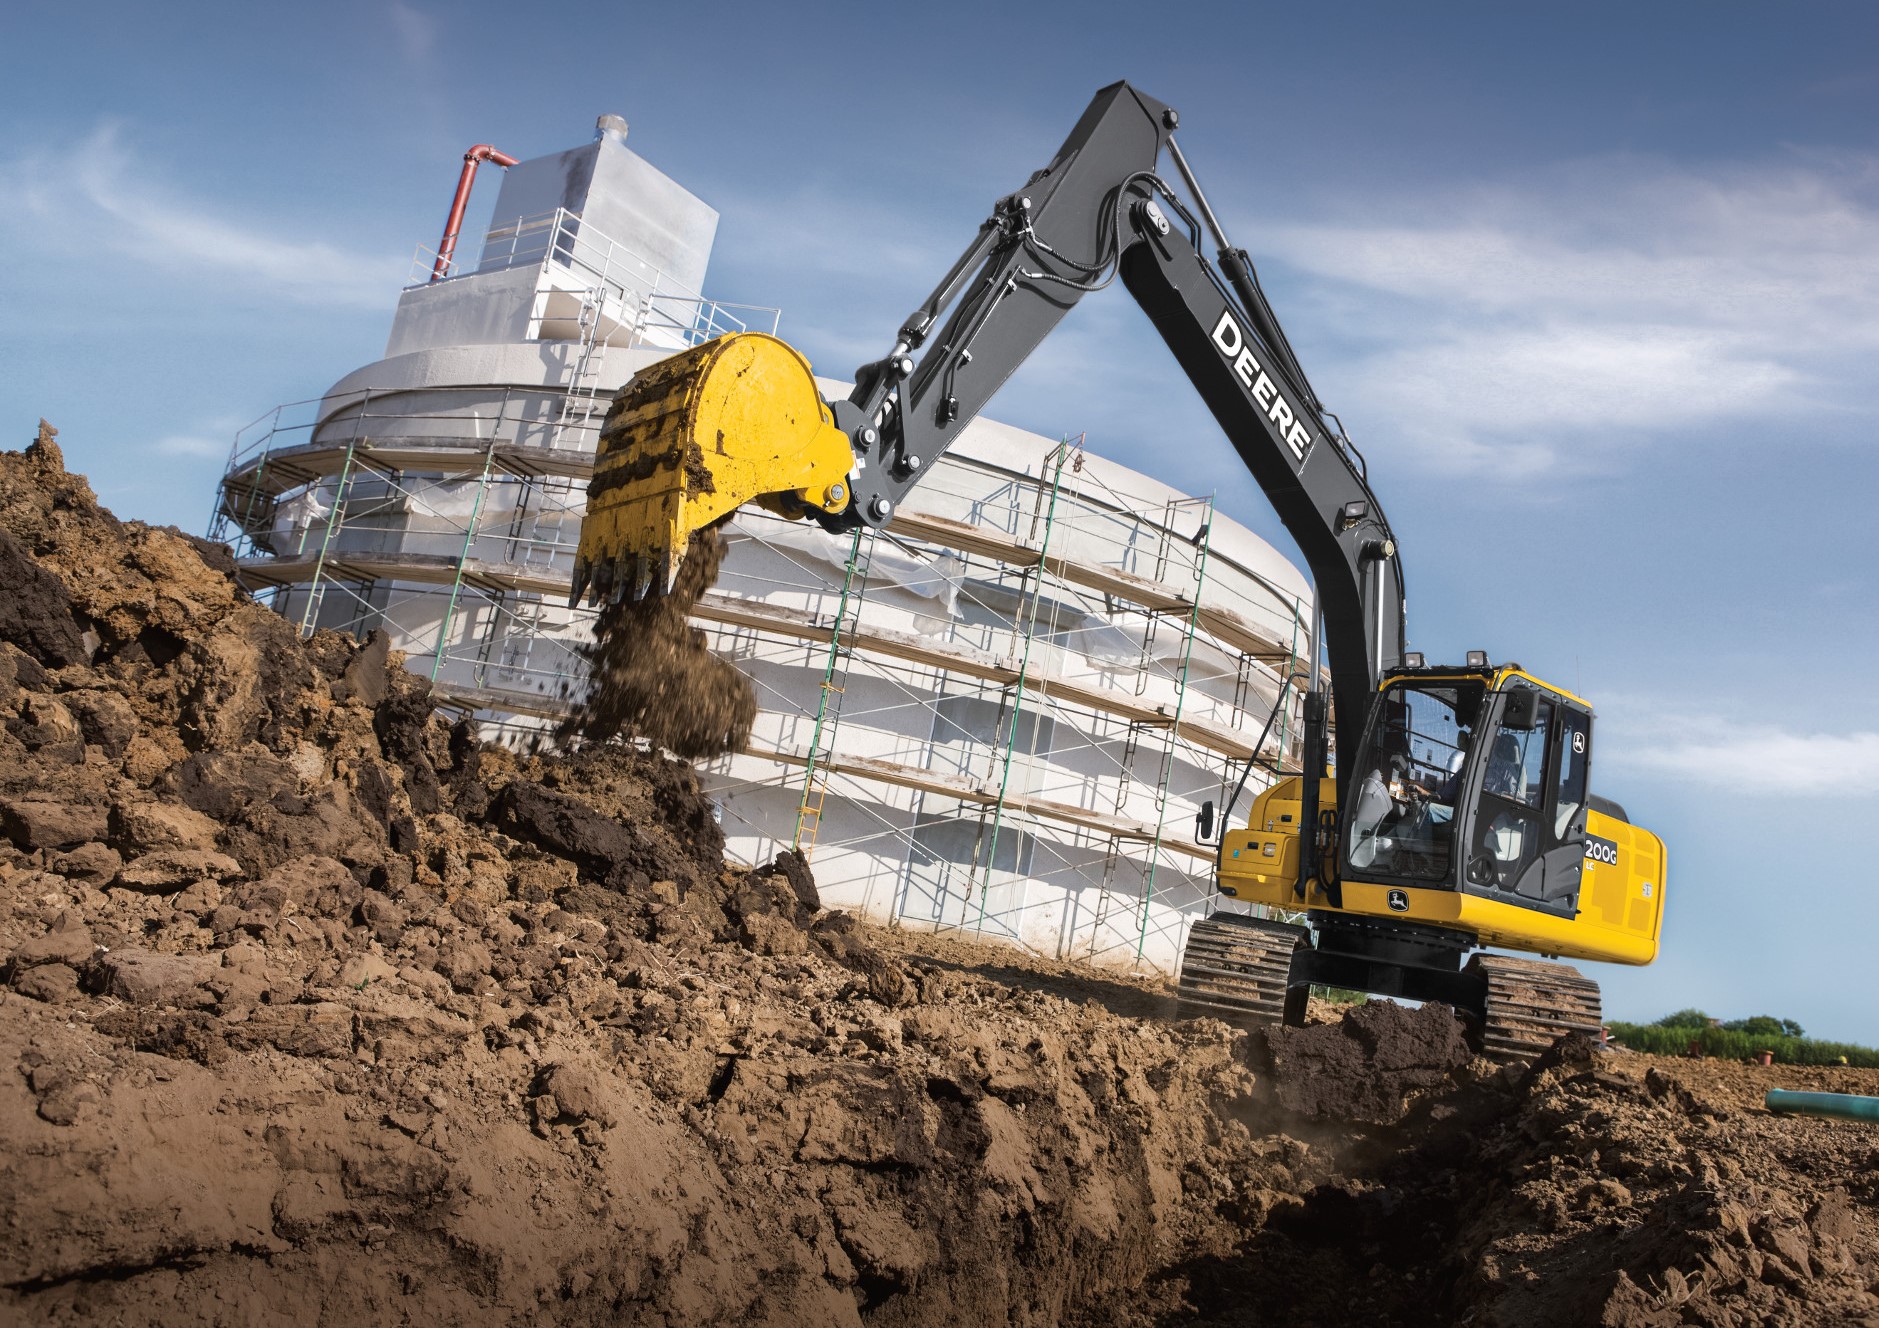 Novidades no mercado de construção: John Deere lança escavadeira de 20 toneladas